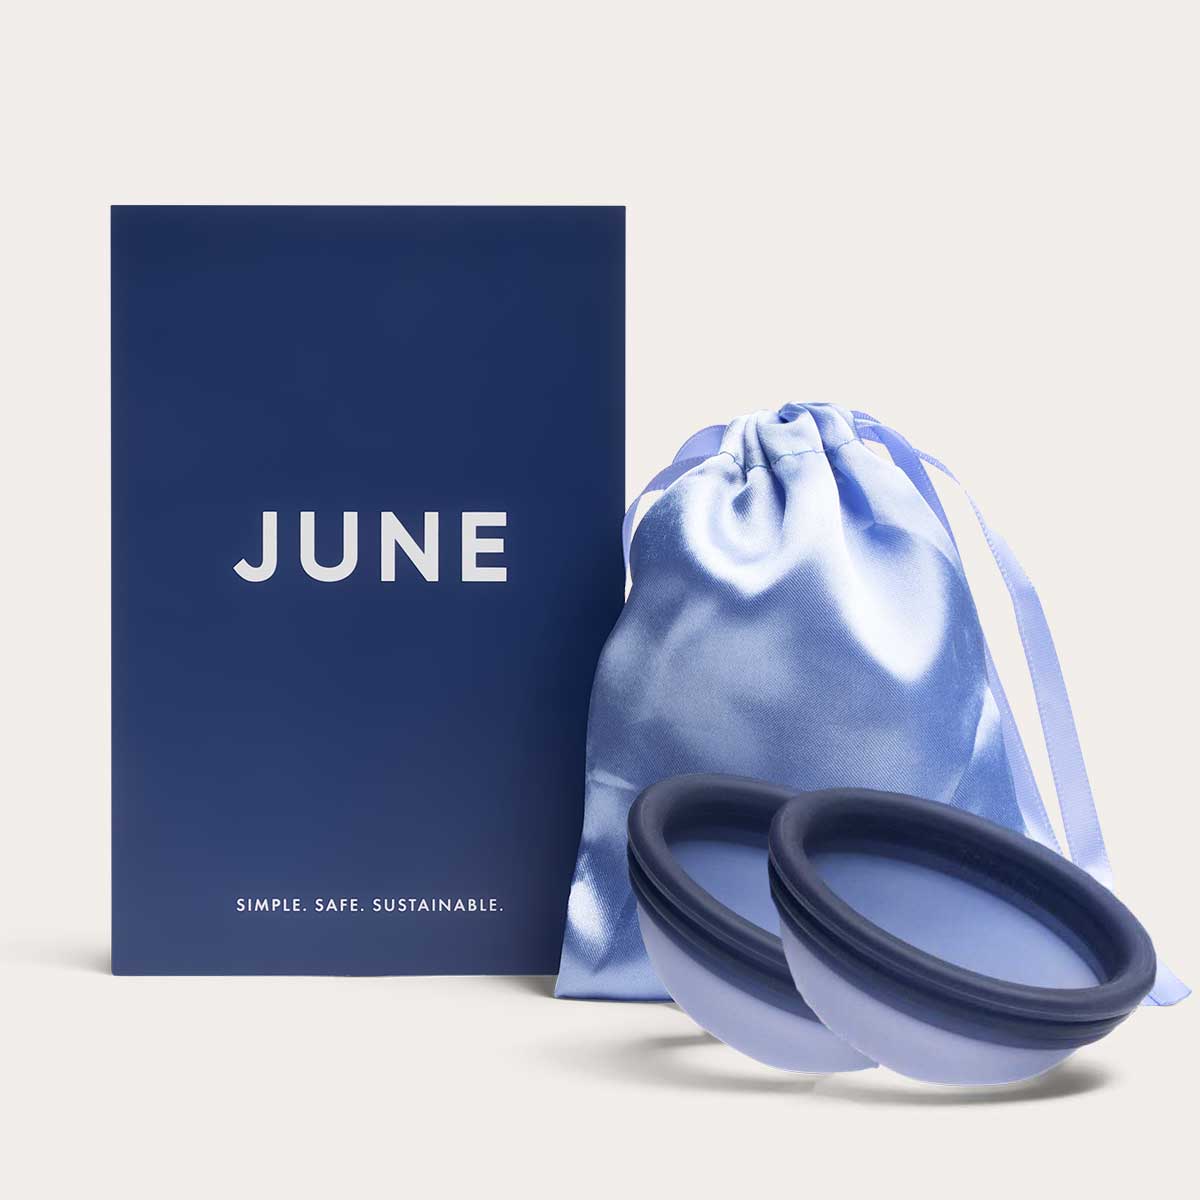 JUNE | The Original June Menstrual Cup The June Menstrual Disc - 2 Pack